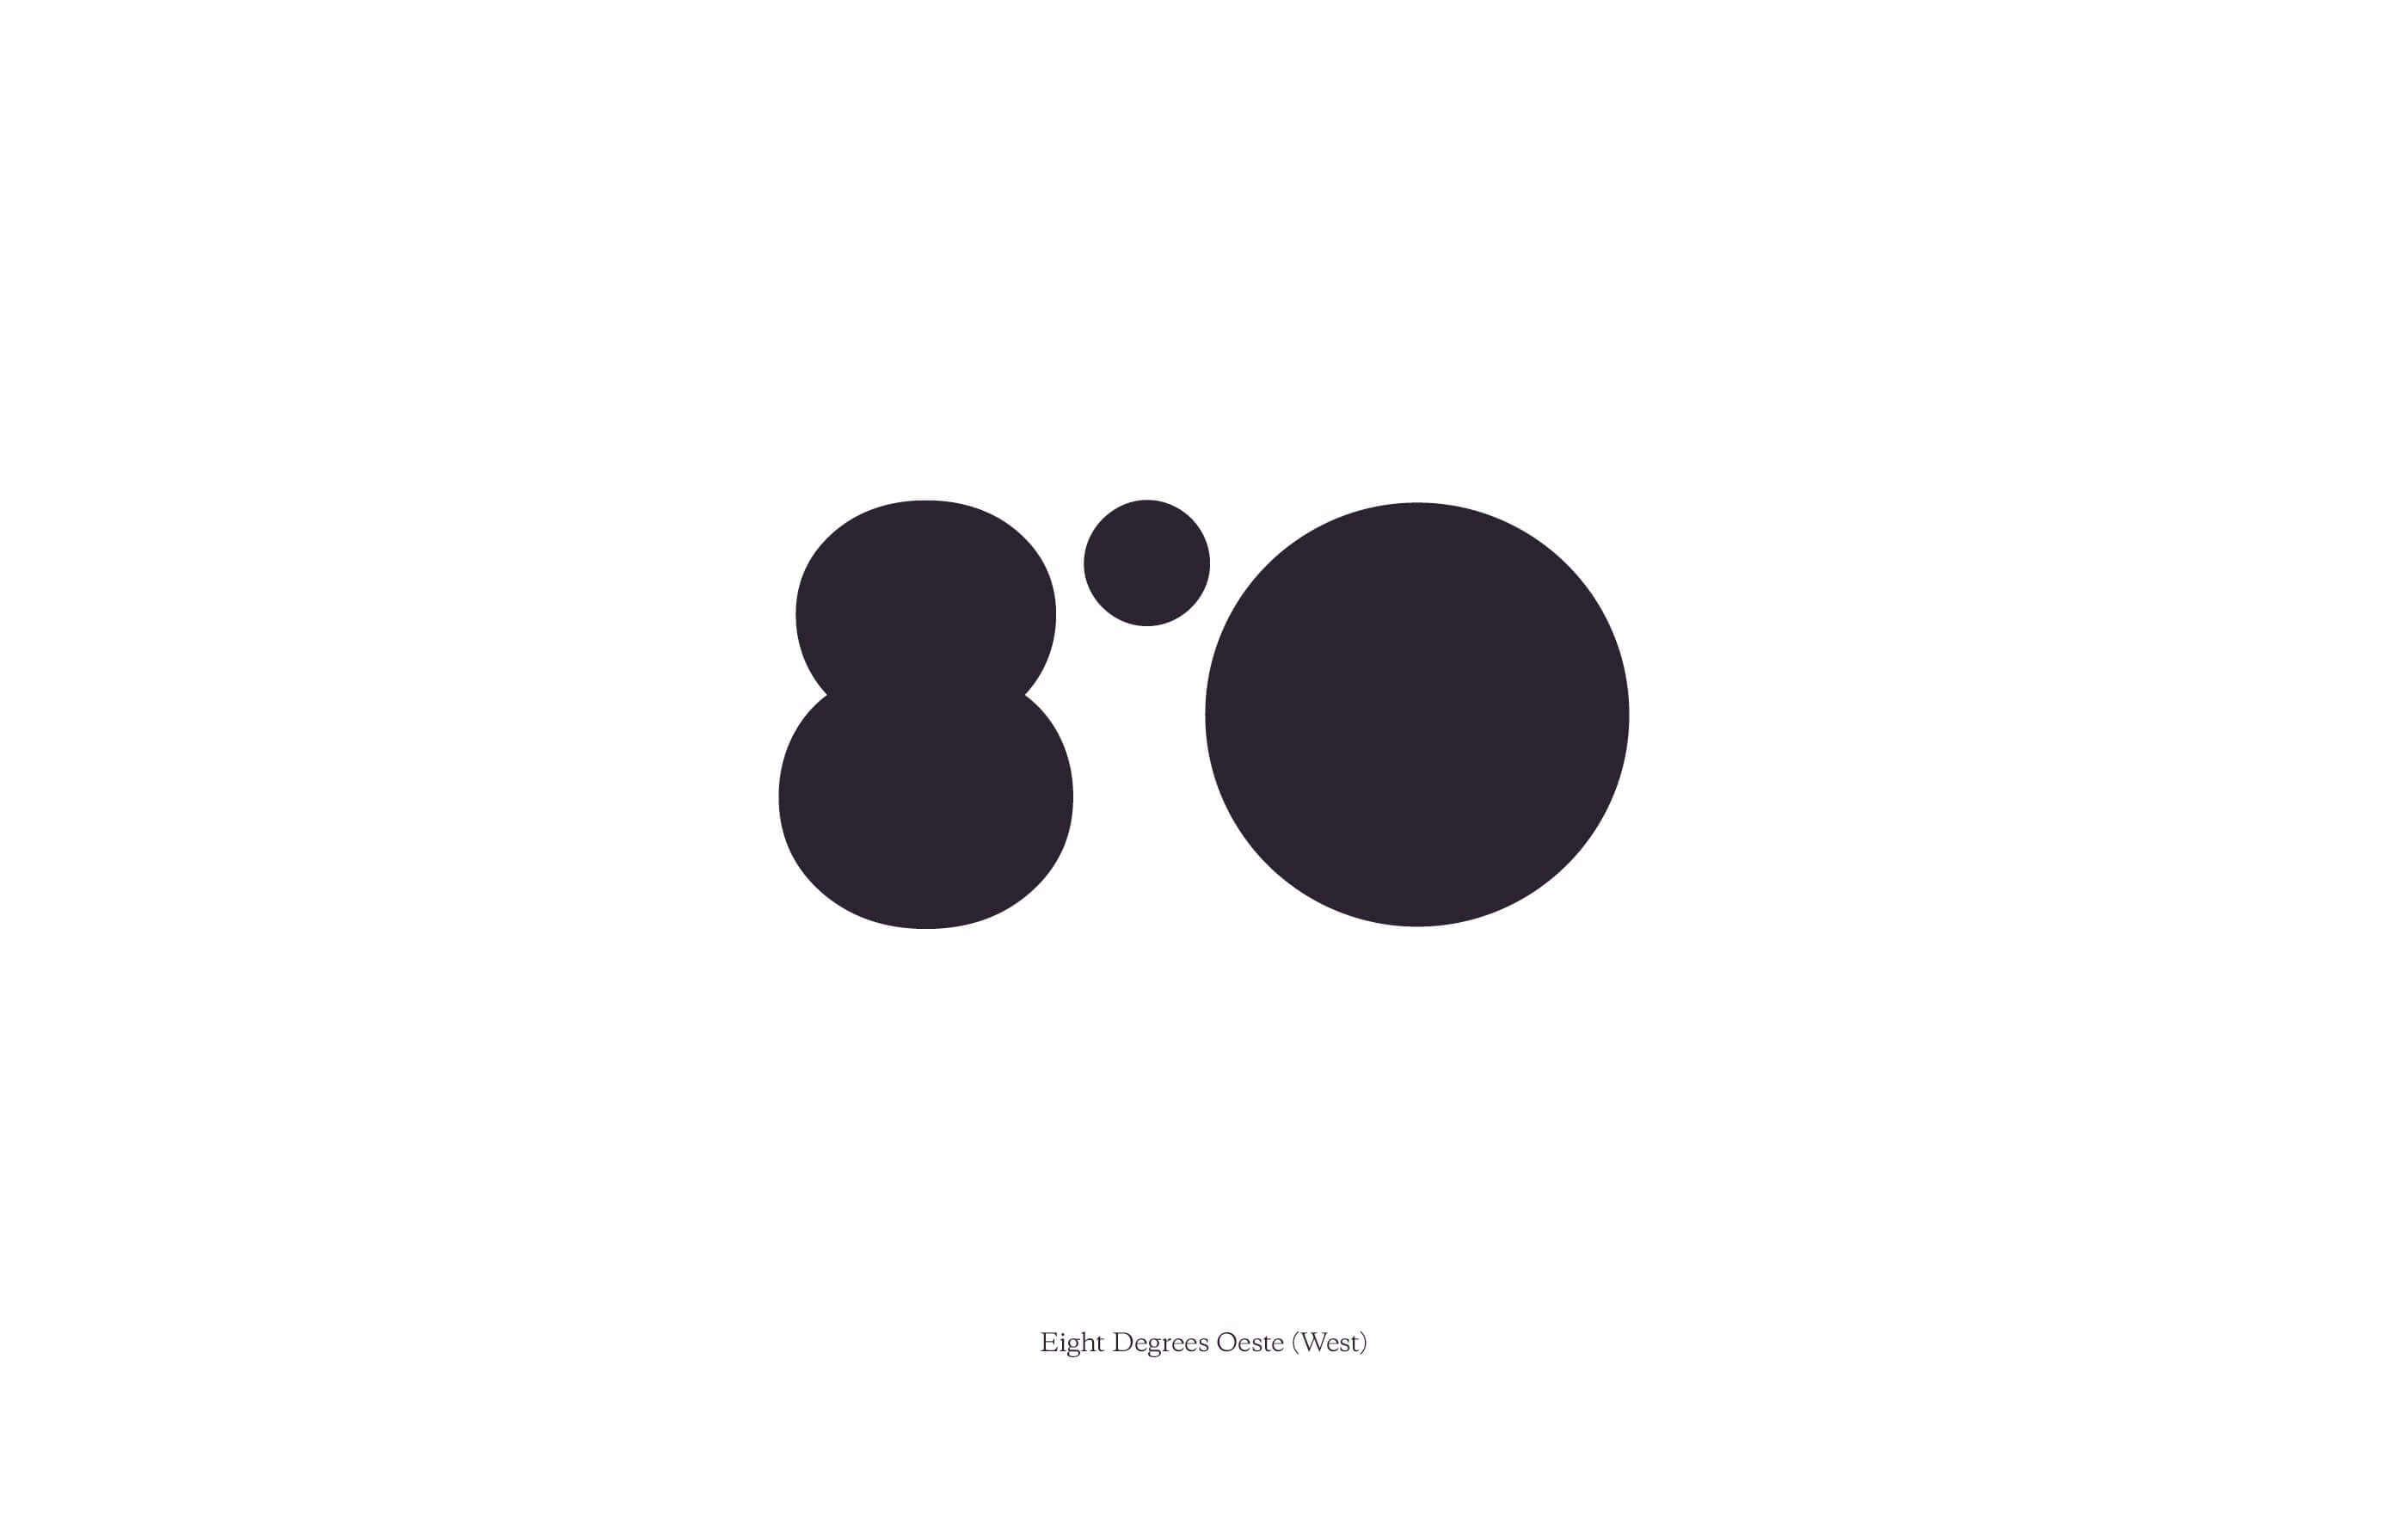 Black Eight Degrees Oeste logo design on a white background